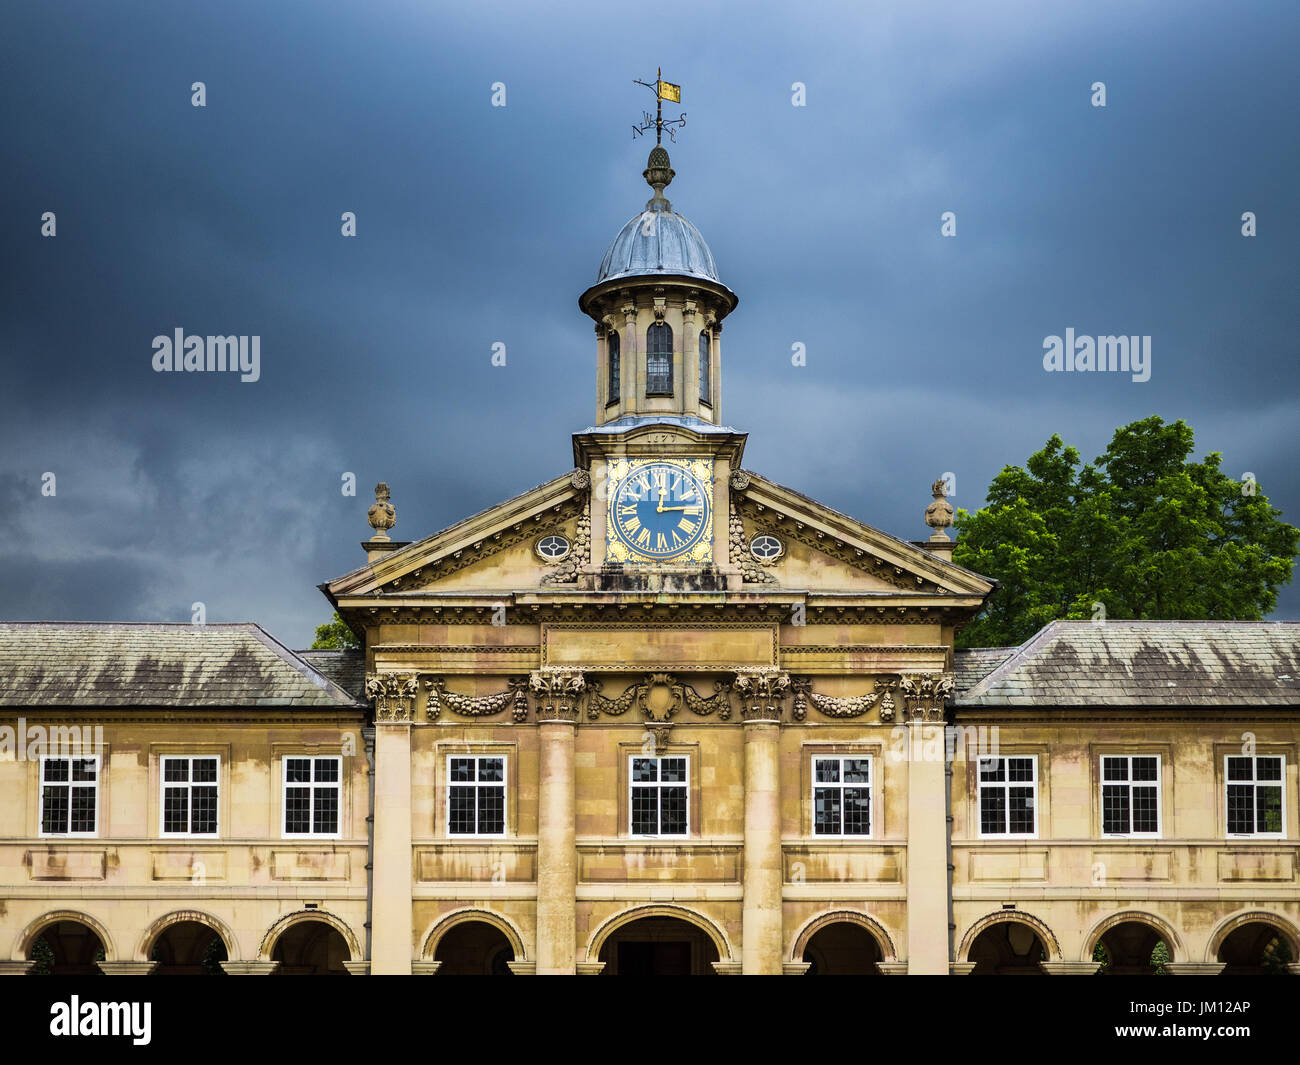 Cambridge - l'horloge et la Cour avant d'Emmanuel College, qui fait partie de l'Université de Cambridge, Royaume-Uni. Le collège a été fondé en 1584. Arch : Wren. Banque D'Images